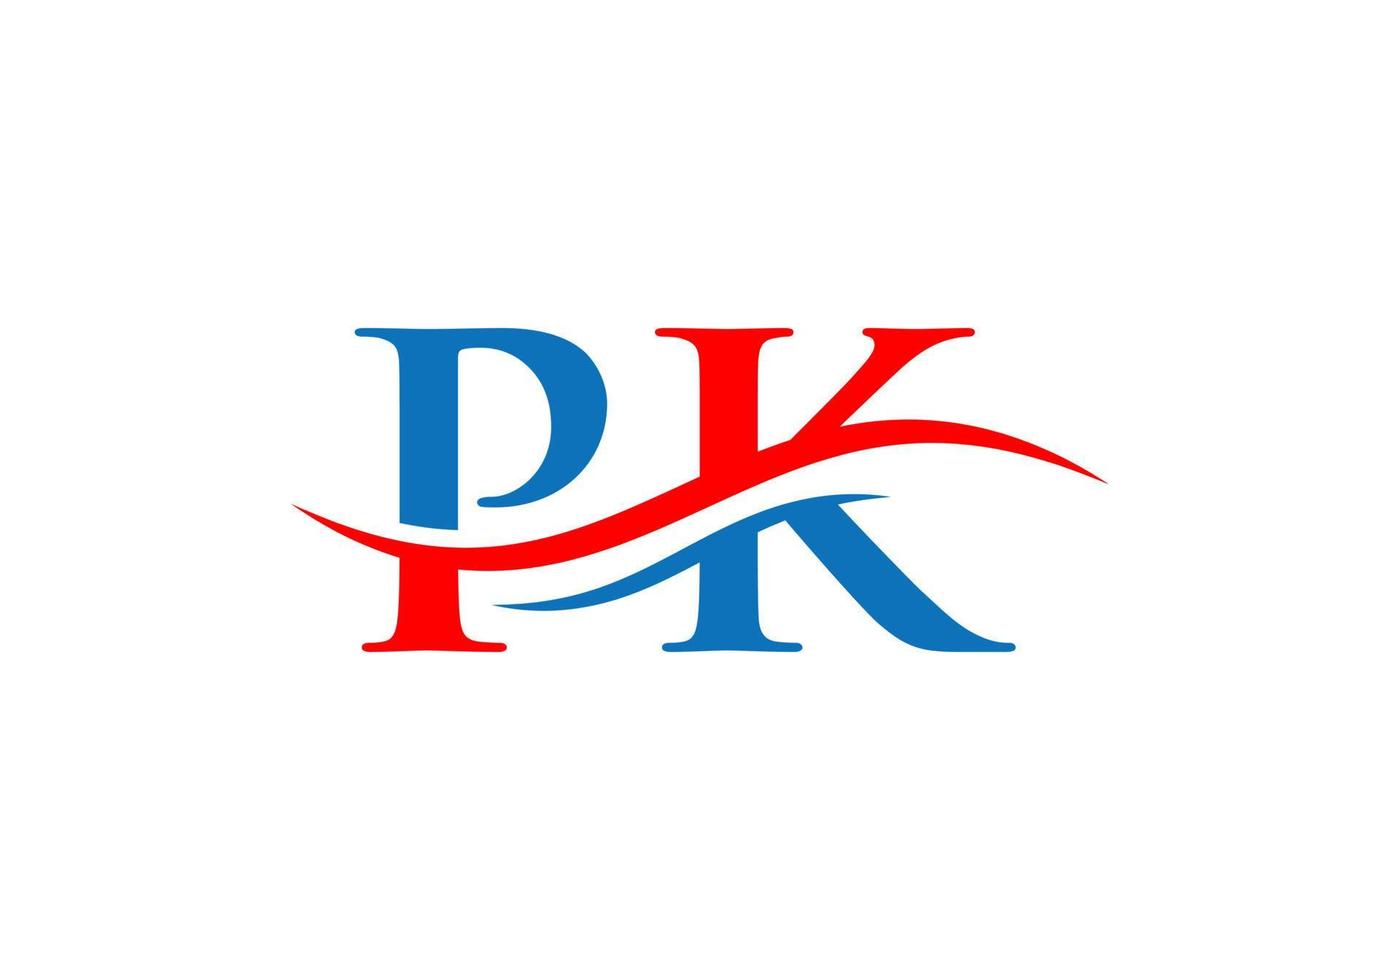 PK logo. Monogram letter PK logo design Vector. PK letter logo design with modern trendy vector